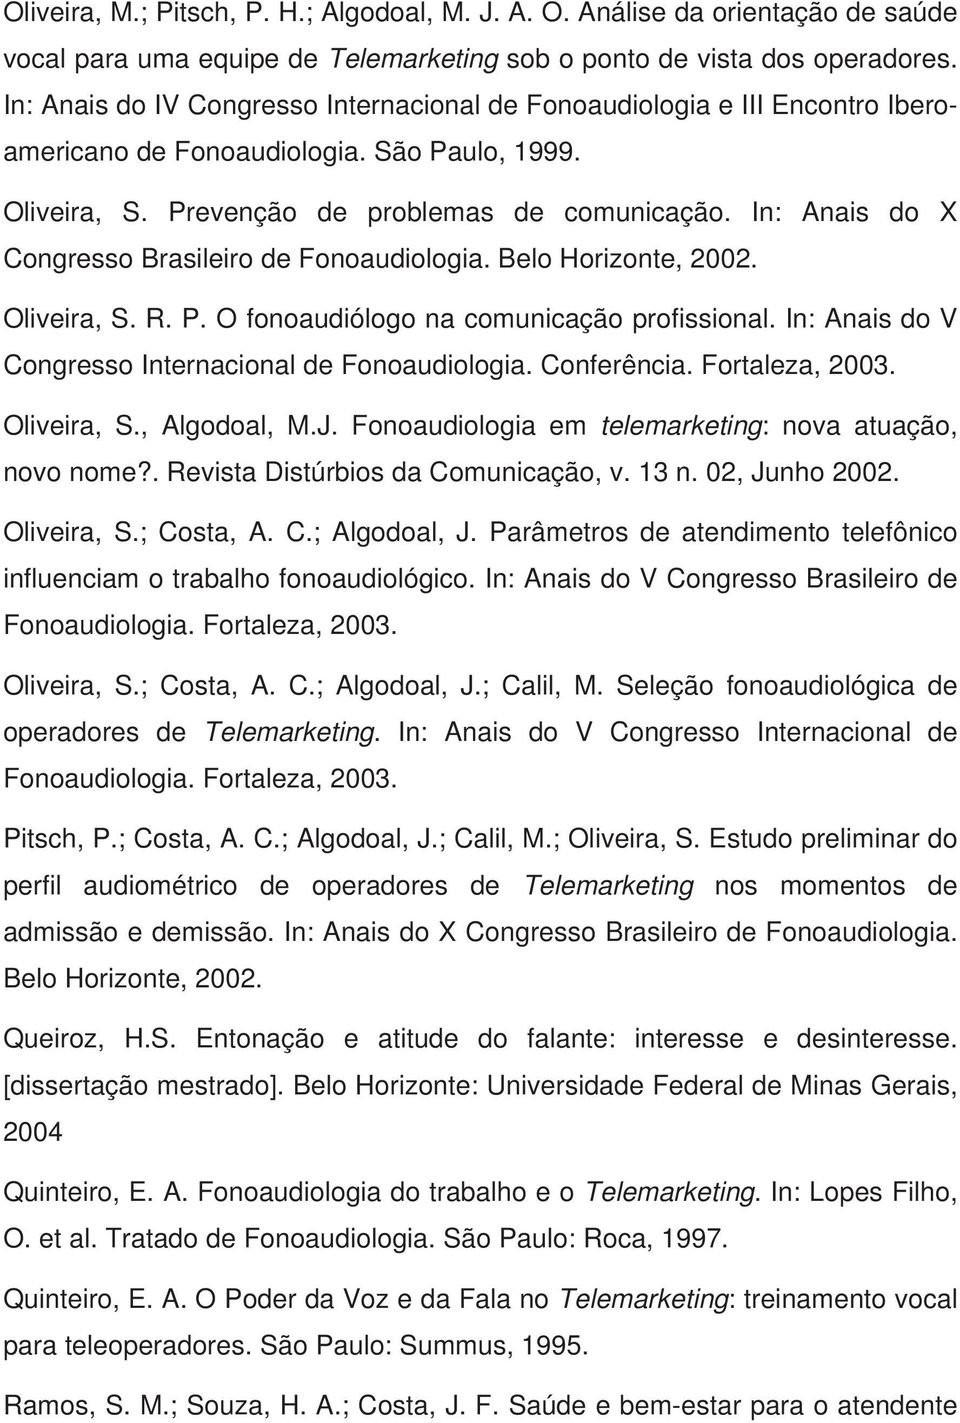 In: Anais do X Congresso Brasileiro de Fonoaudiologia. Belo Horizonte, 2002. Oliveira, S. R. P. O fonoaudiólogo na comunicação profissional. In: Anais do V Congresso Internacional de Fonoaudiologia.